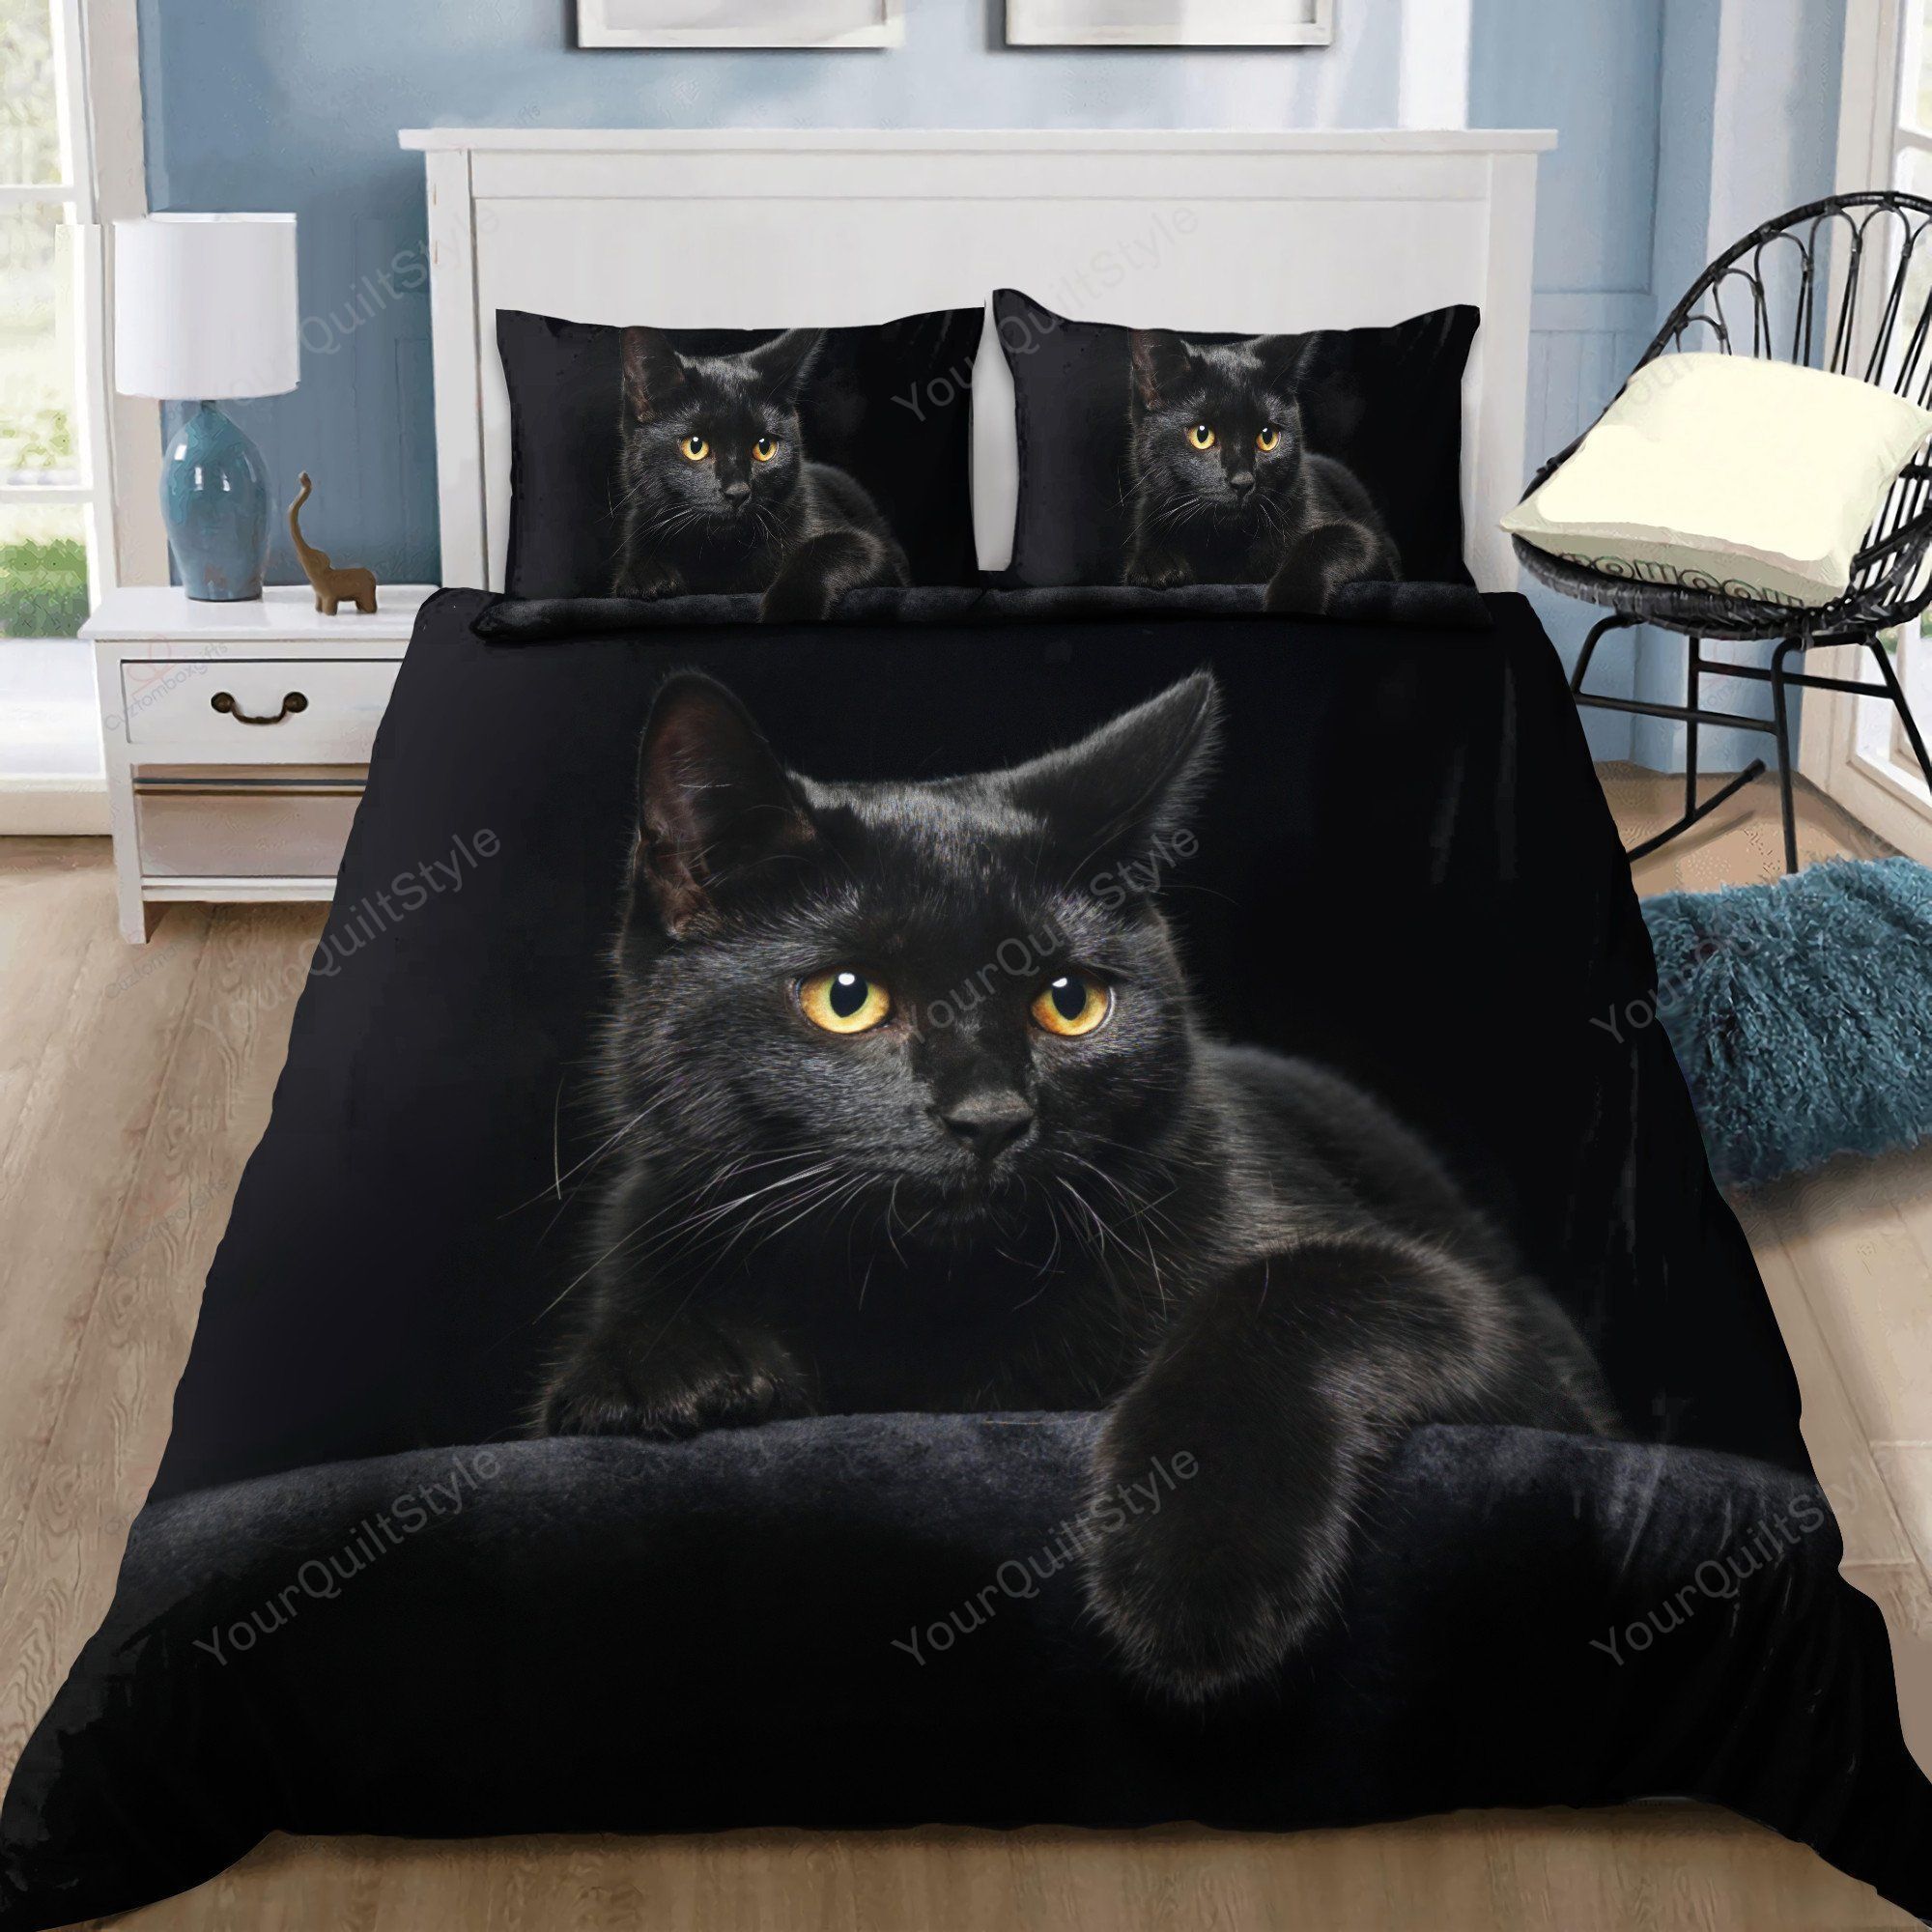 Black Cat Bedding Set Bed Sheets Duvet Cover Bedding Sets